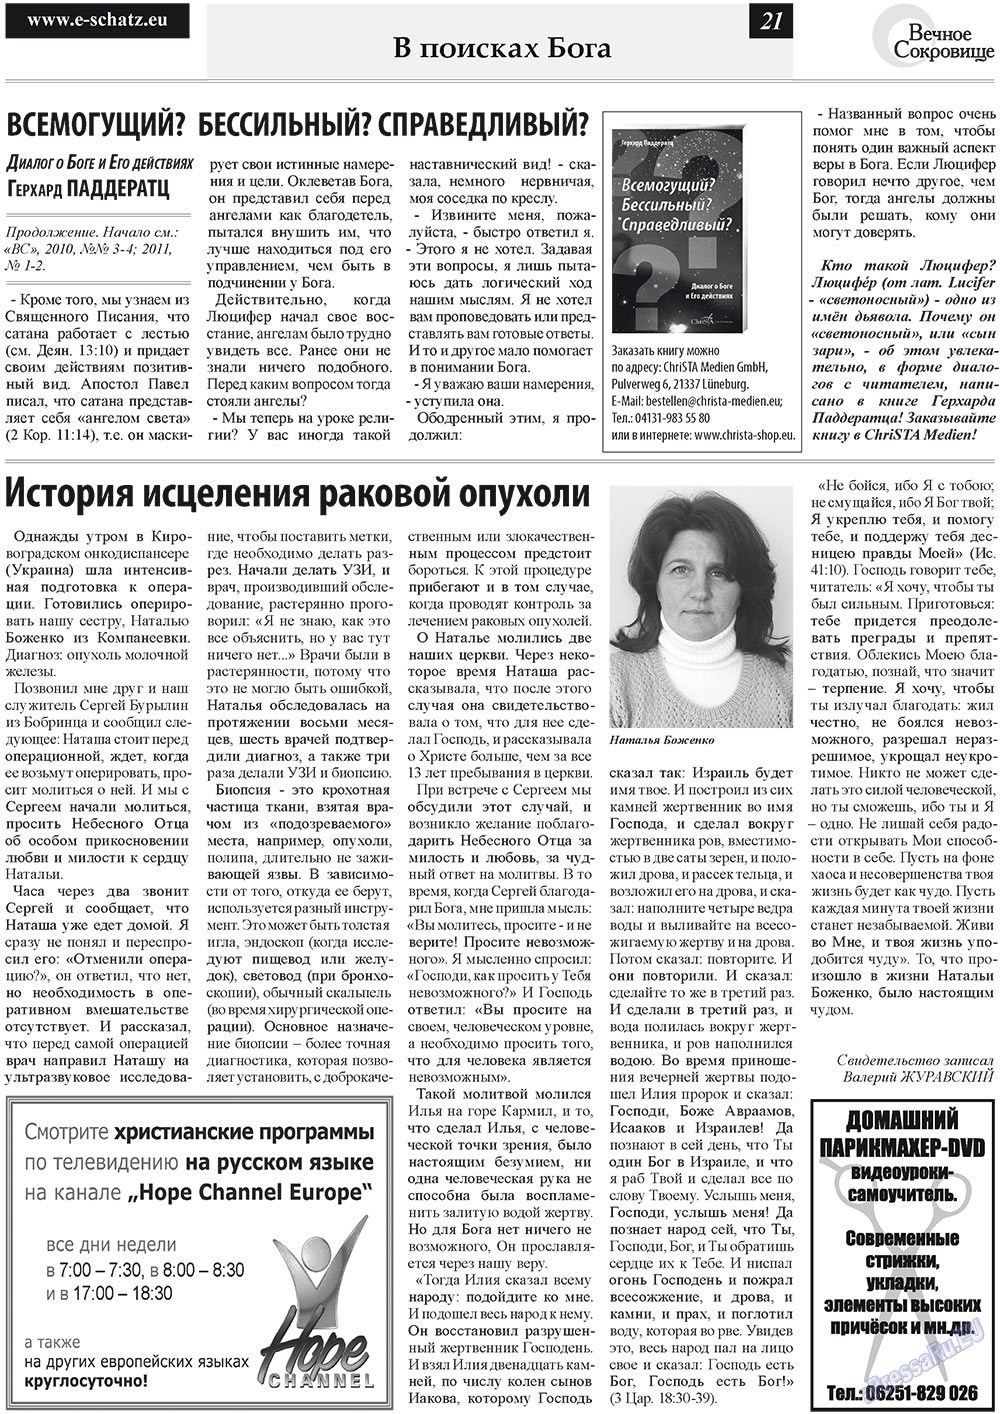 Вечное сокровище, газета. 2011 №3 стр.21